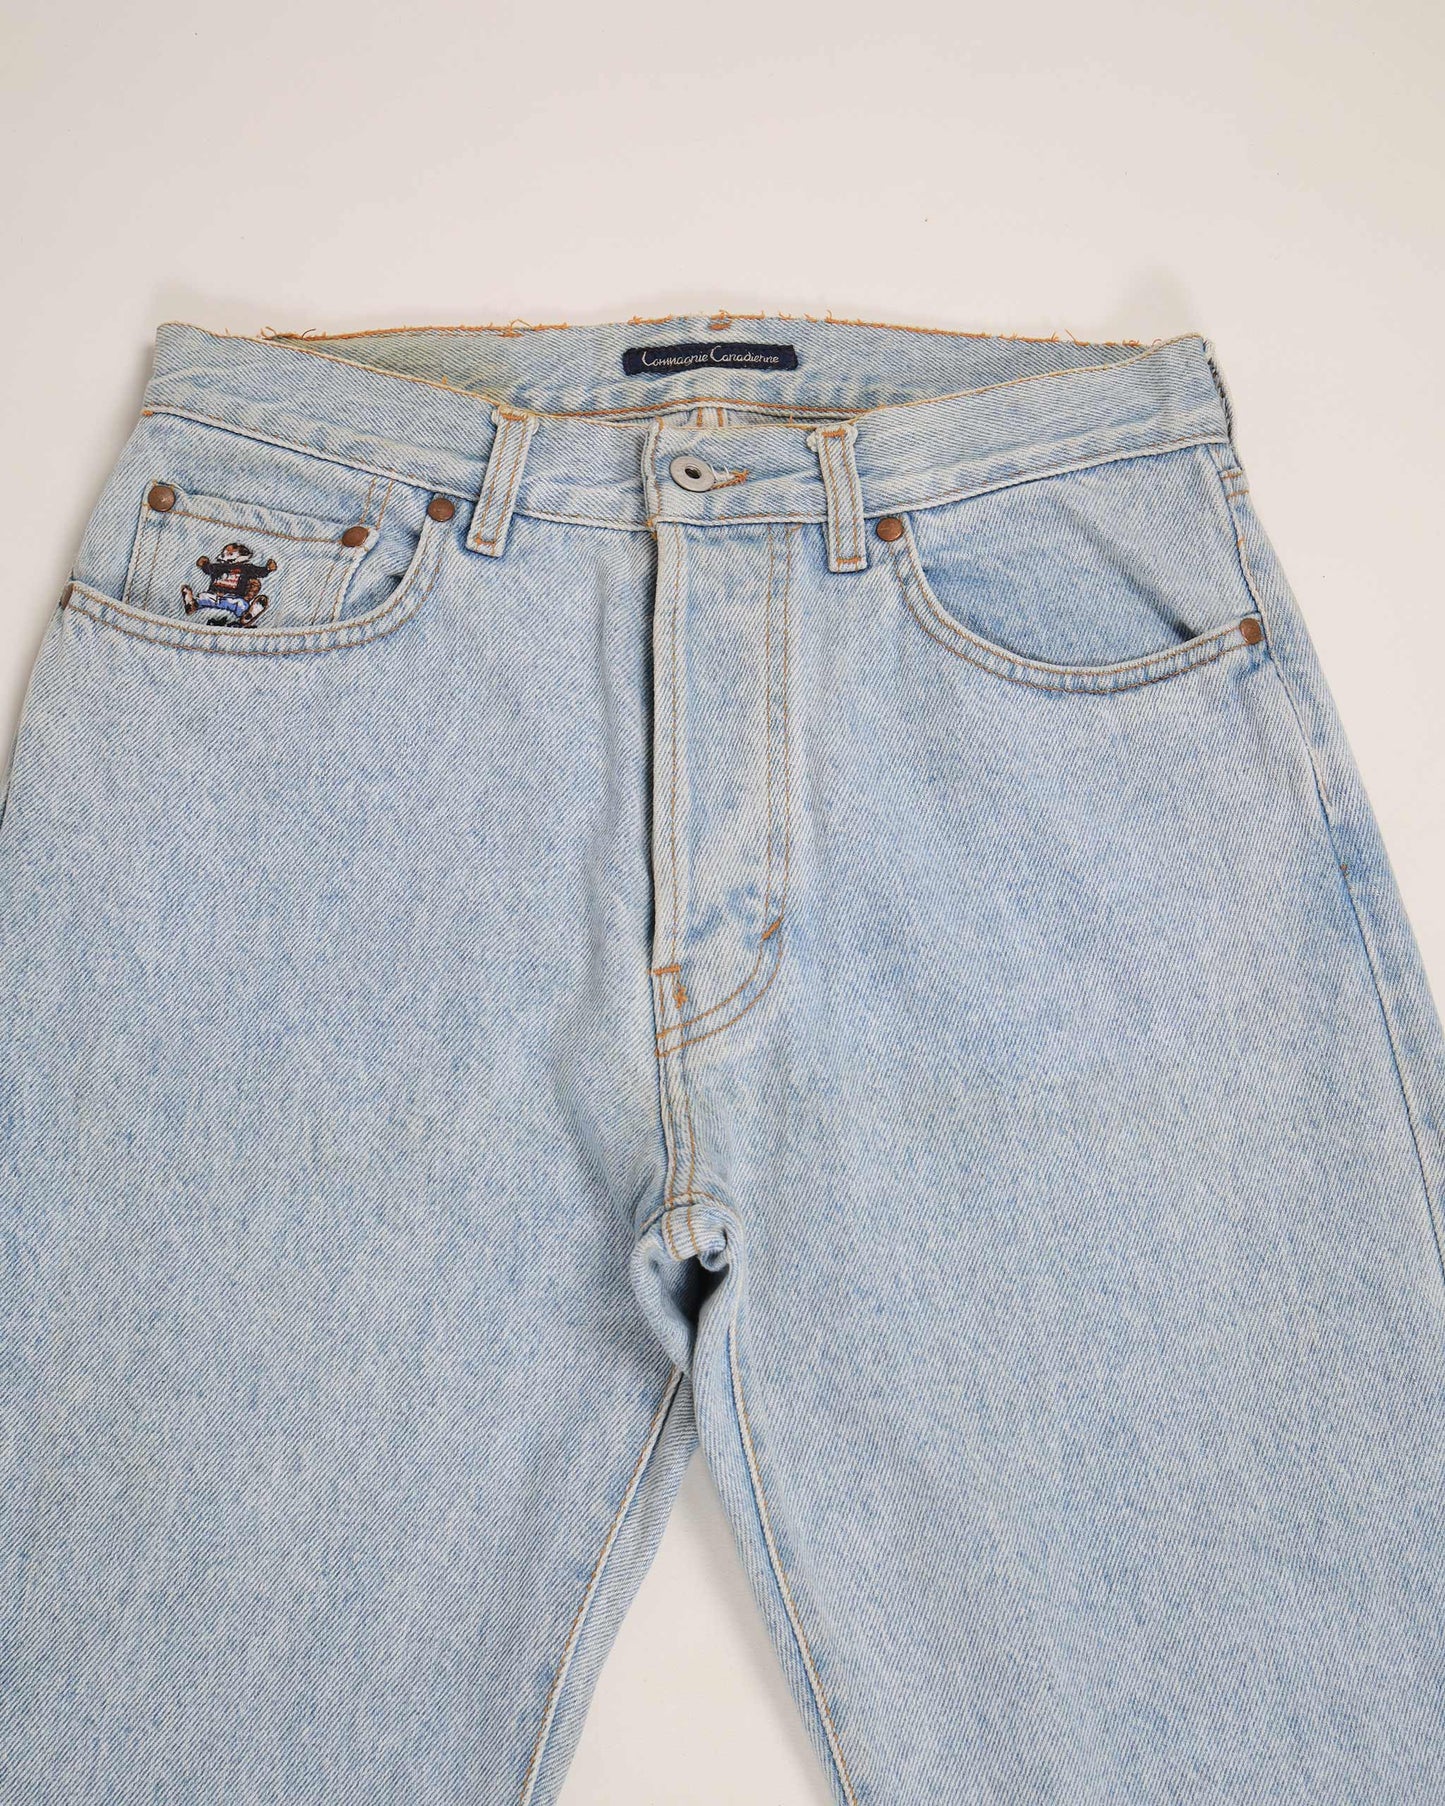 Vintage Compagnie Canadienne High Waist Denim Jeans